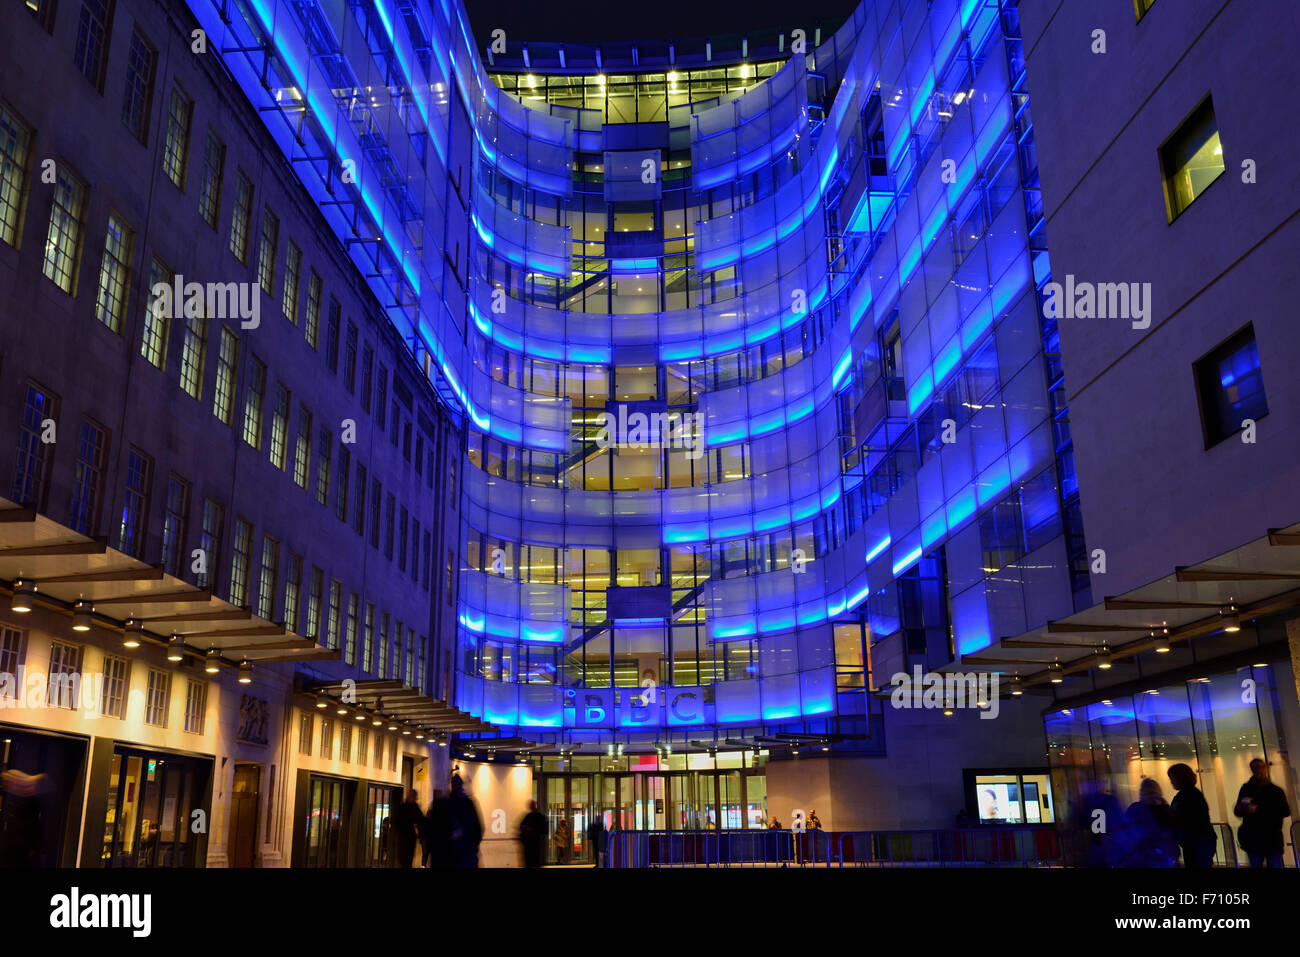 BBC Broadcasting House connexion aile avec illumination bleue, Portland Place, London W1A, United Kingdom Banque D'Images